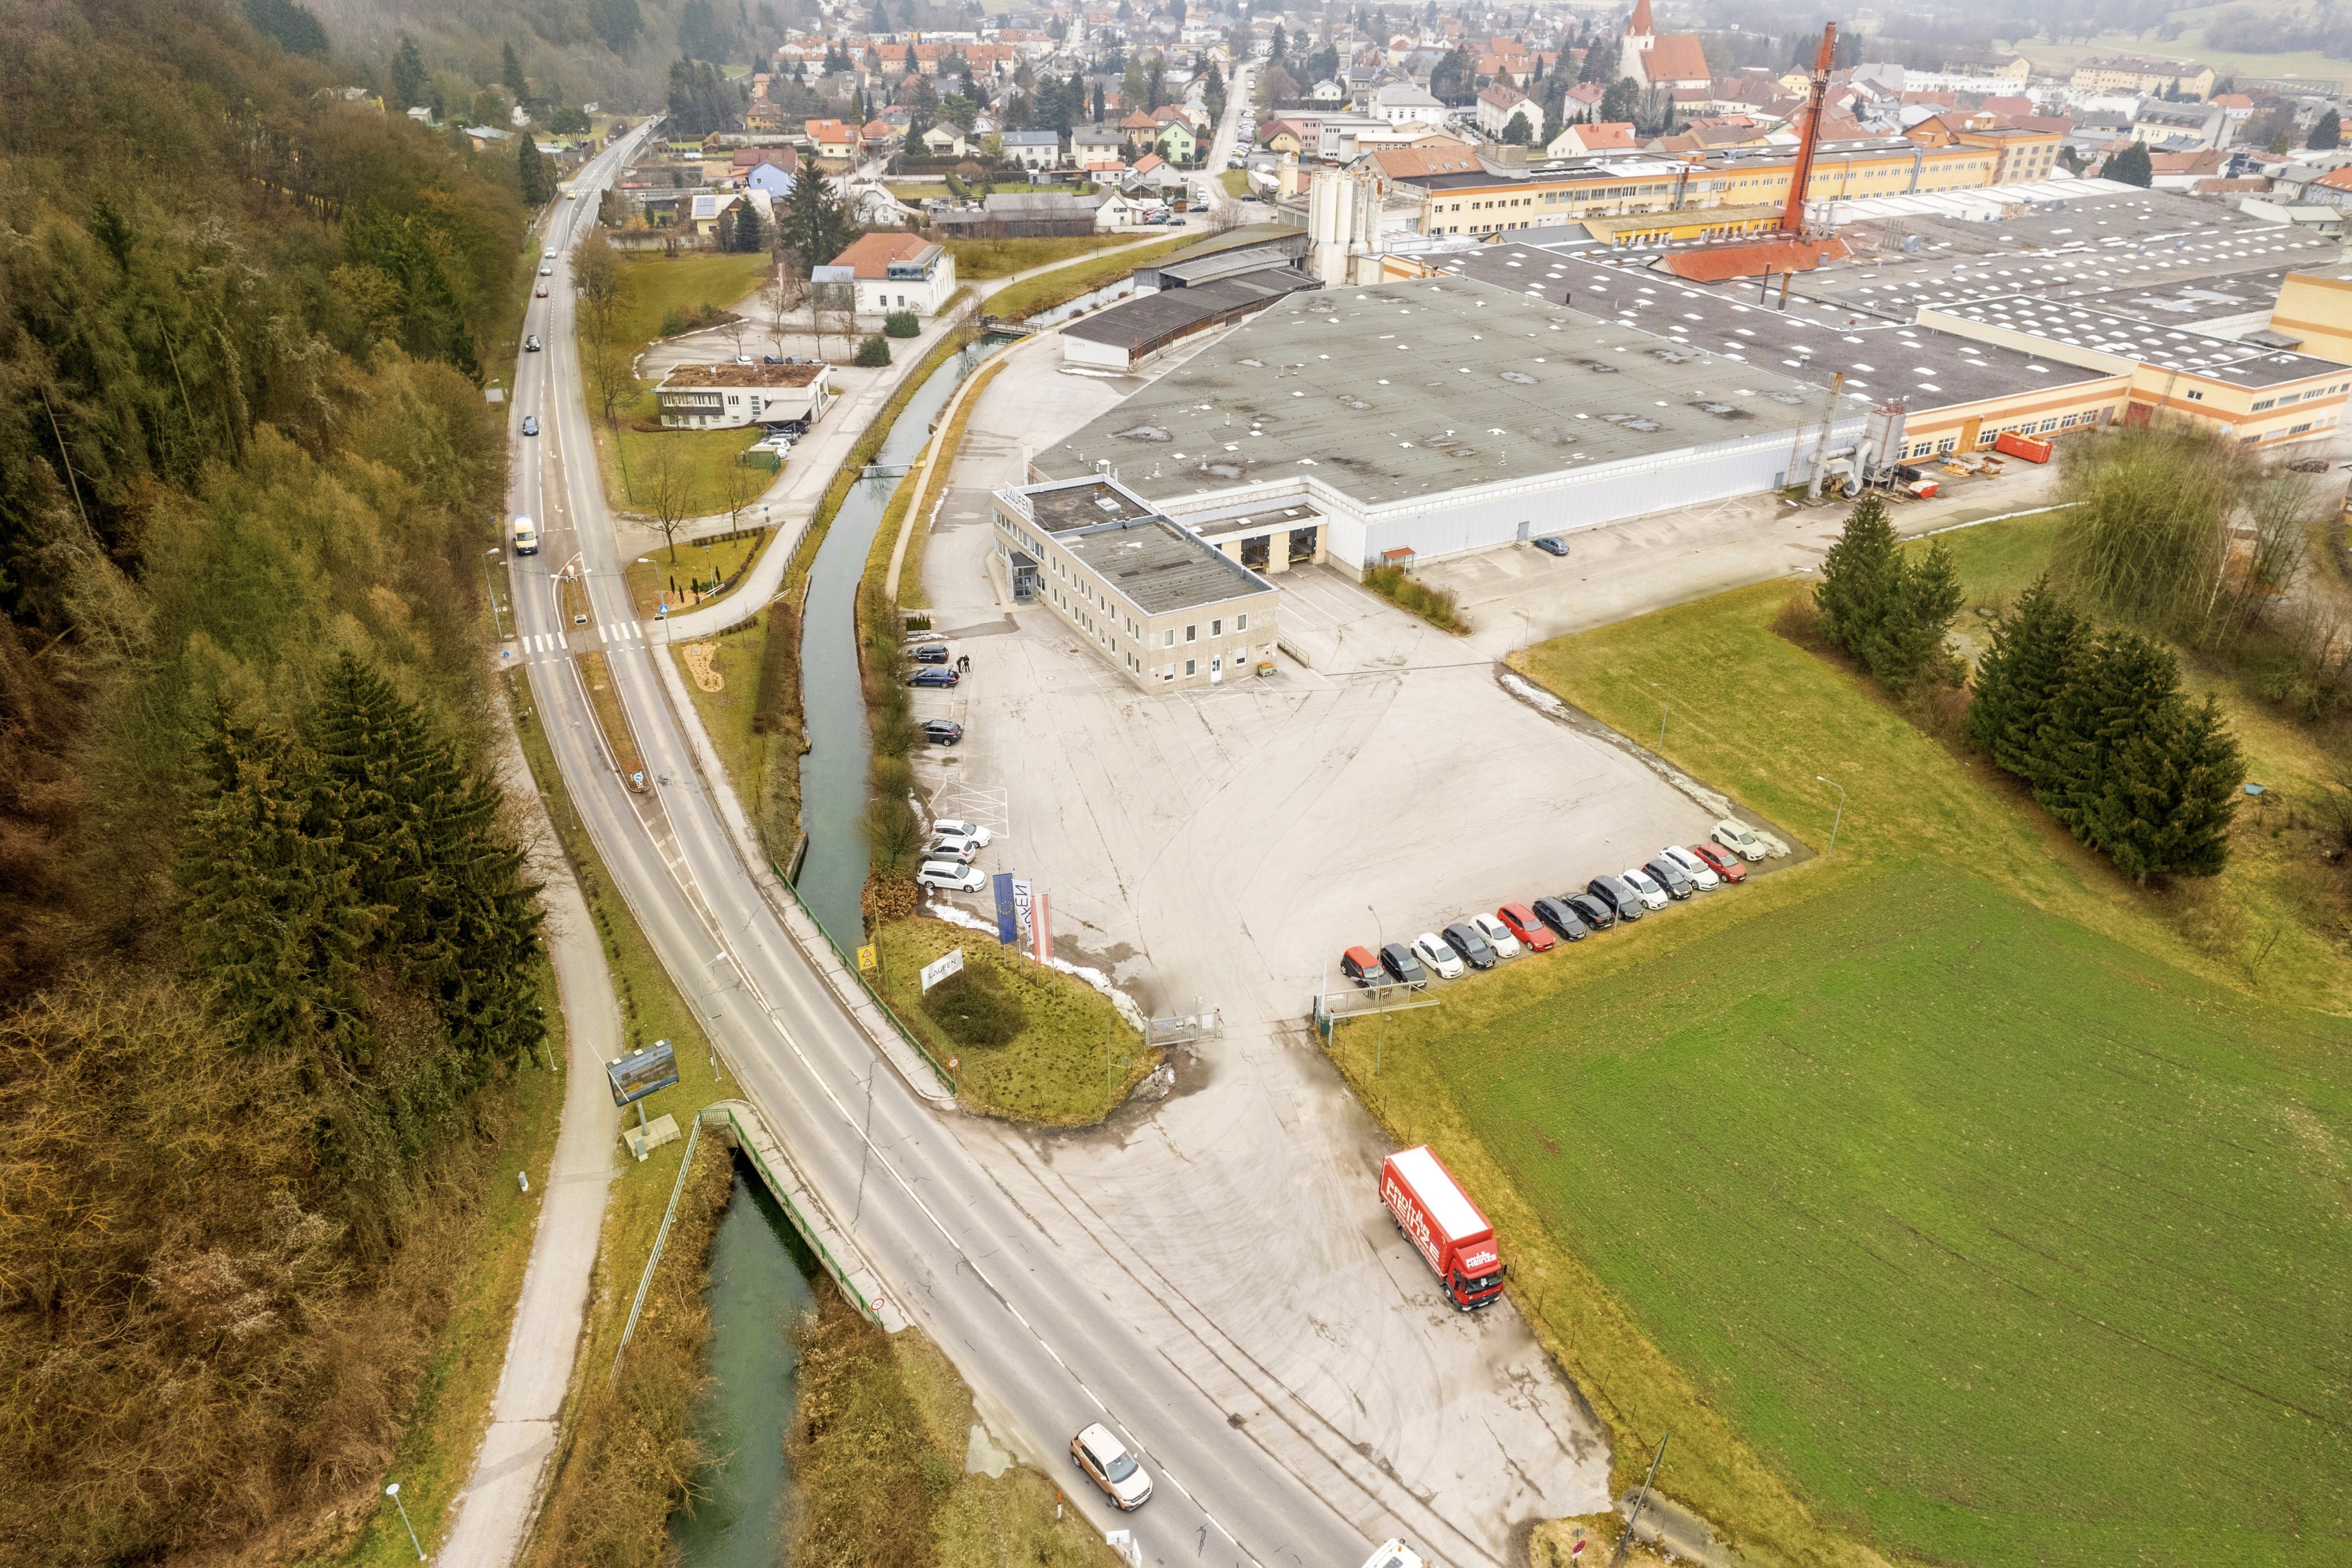 Startschuss für Bieterprozess in Wilhelmsburg: Modesta Real Estate begleitet Verkauf einer Industrieliegenschaft